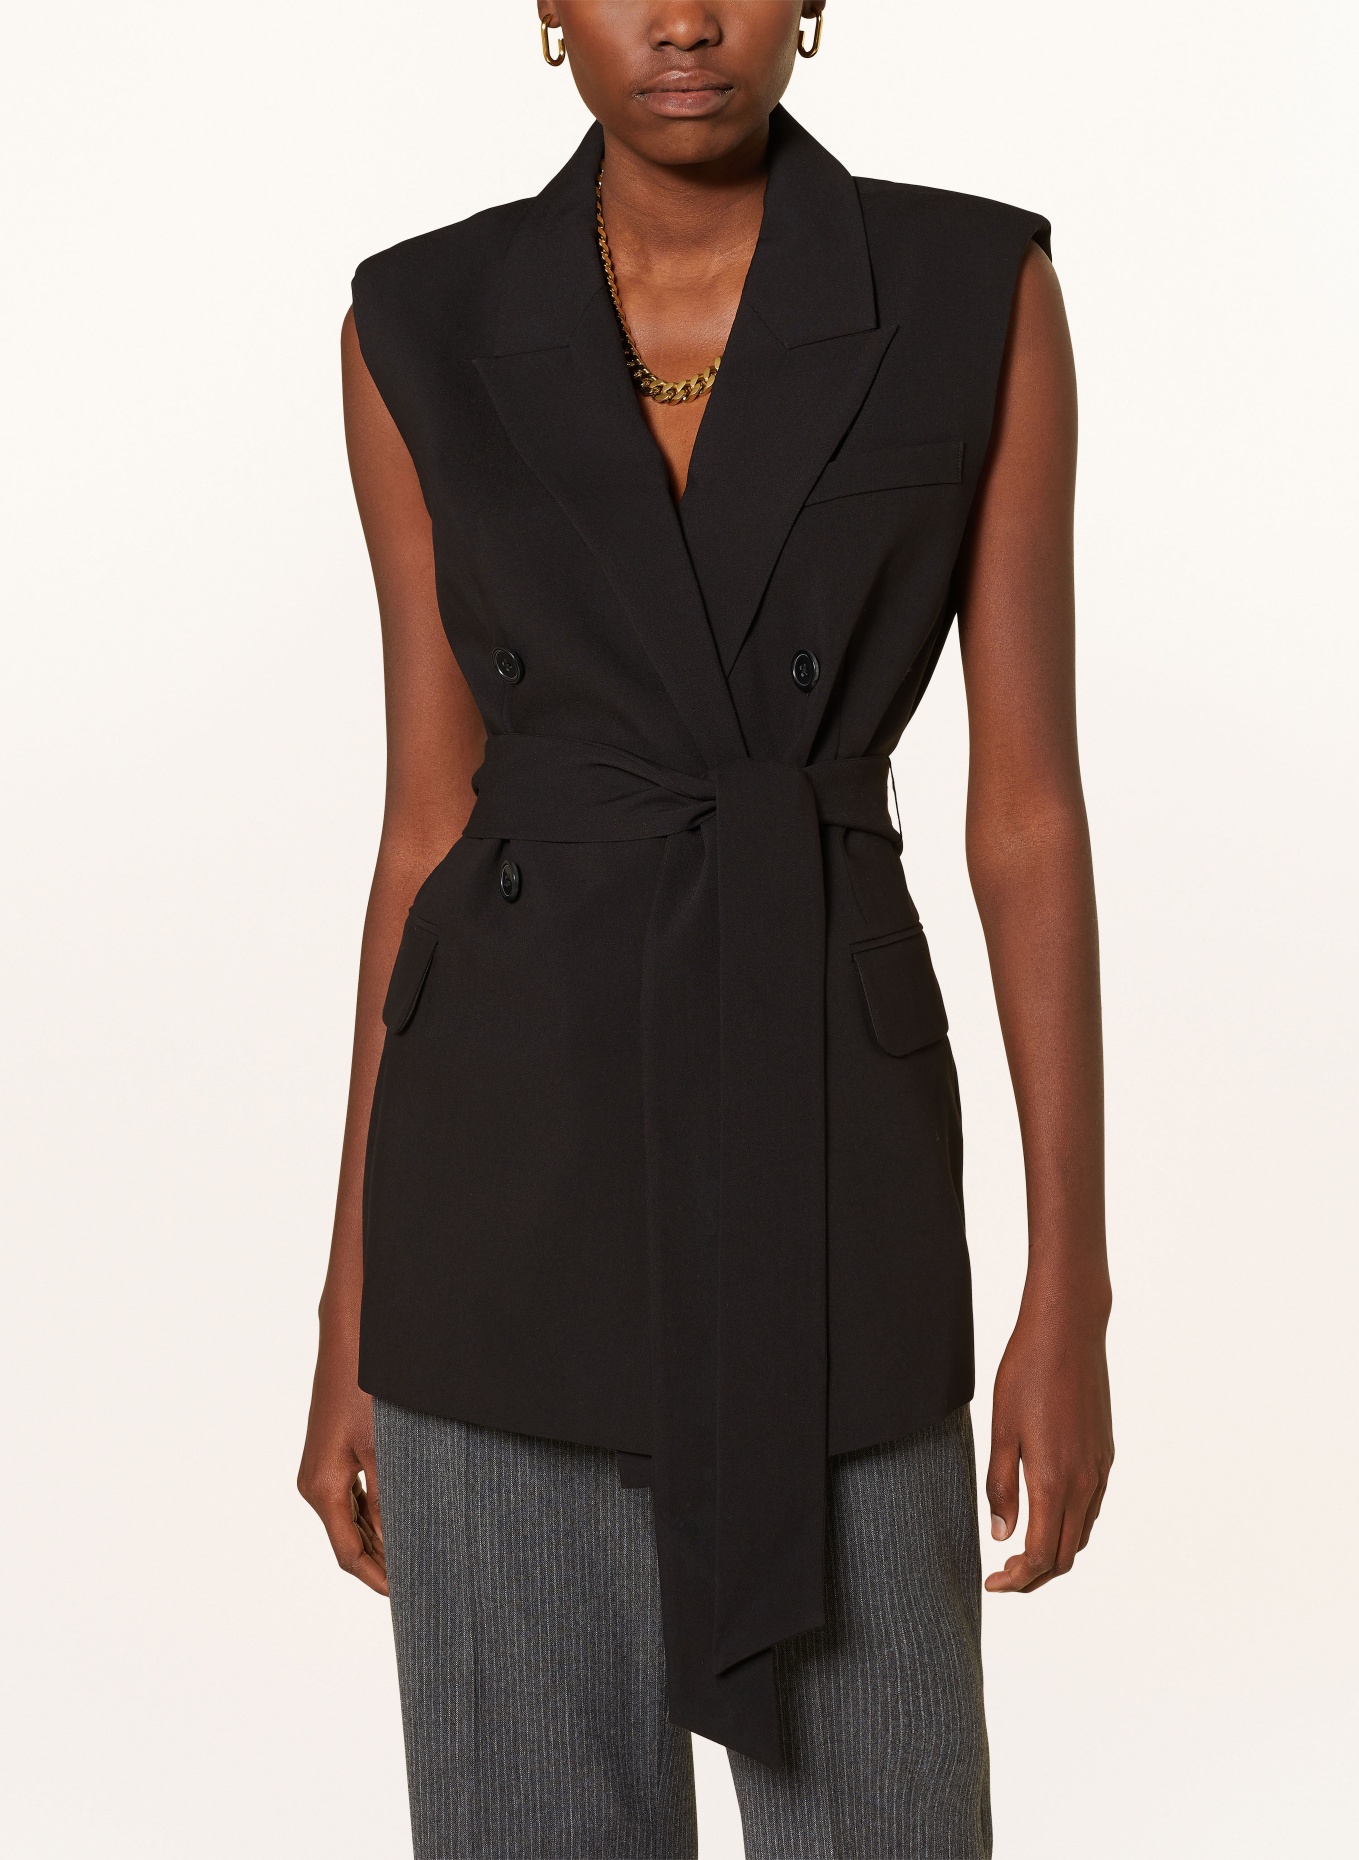 MRS & HUGS Blazer vest, Color: BLACK (Image 4)